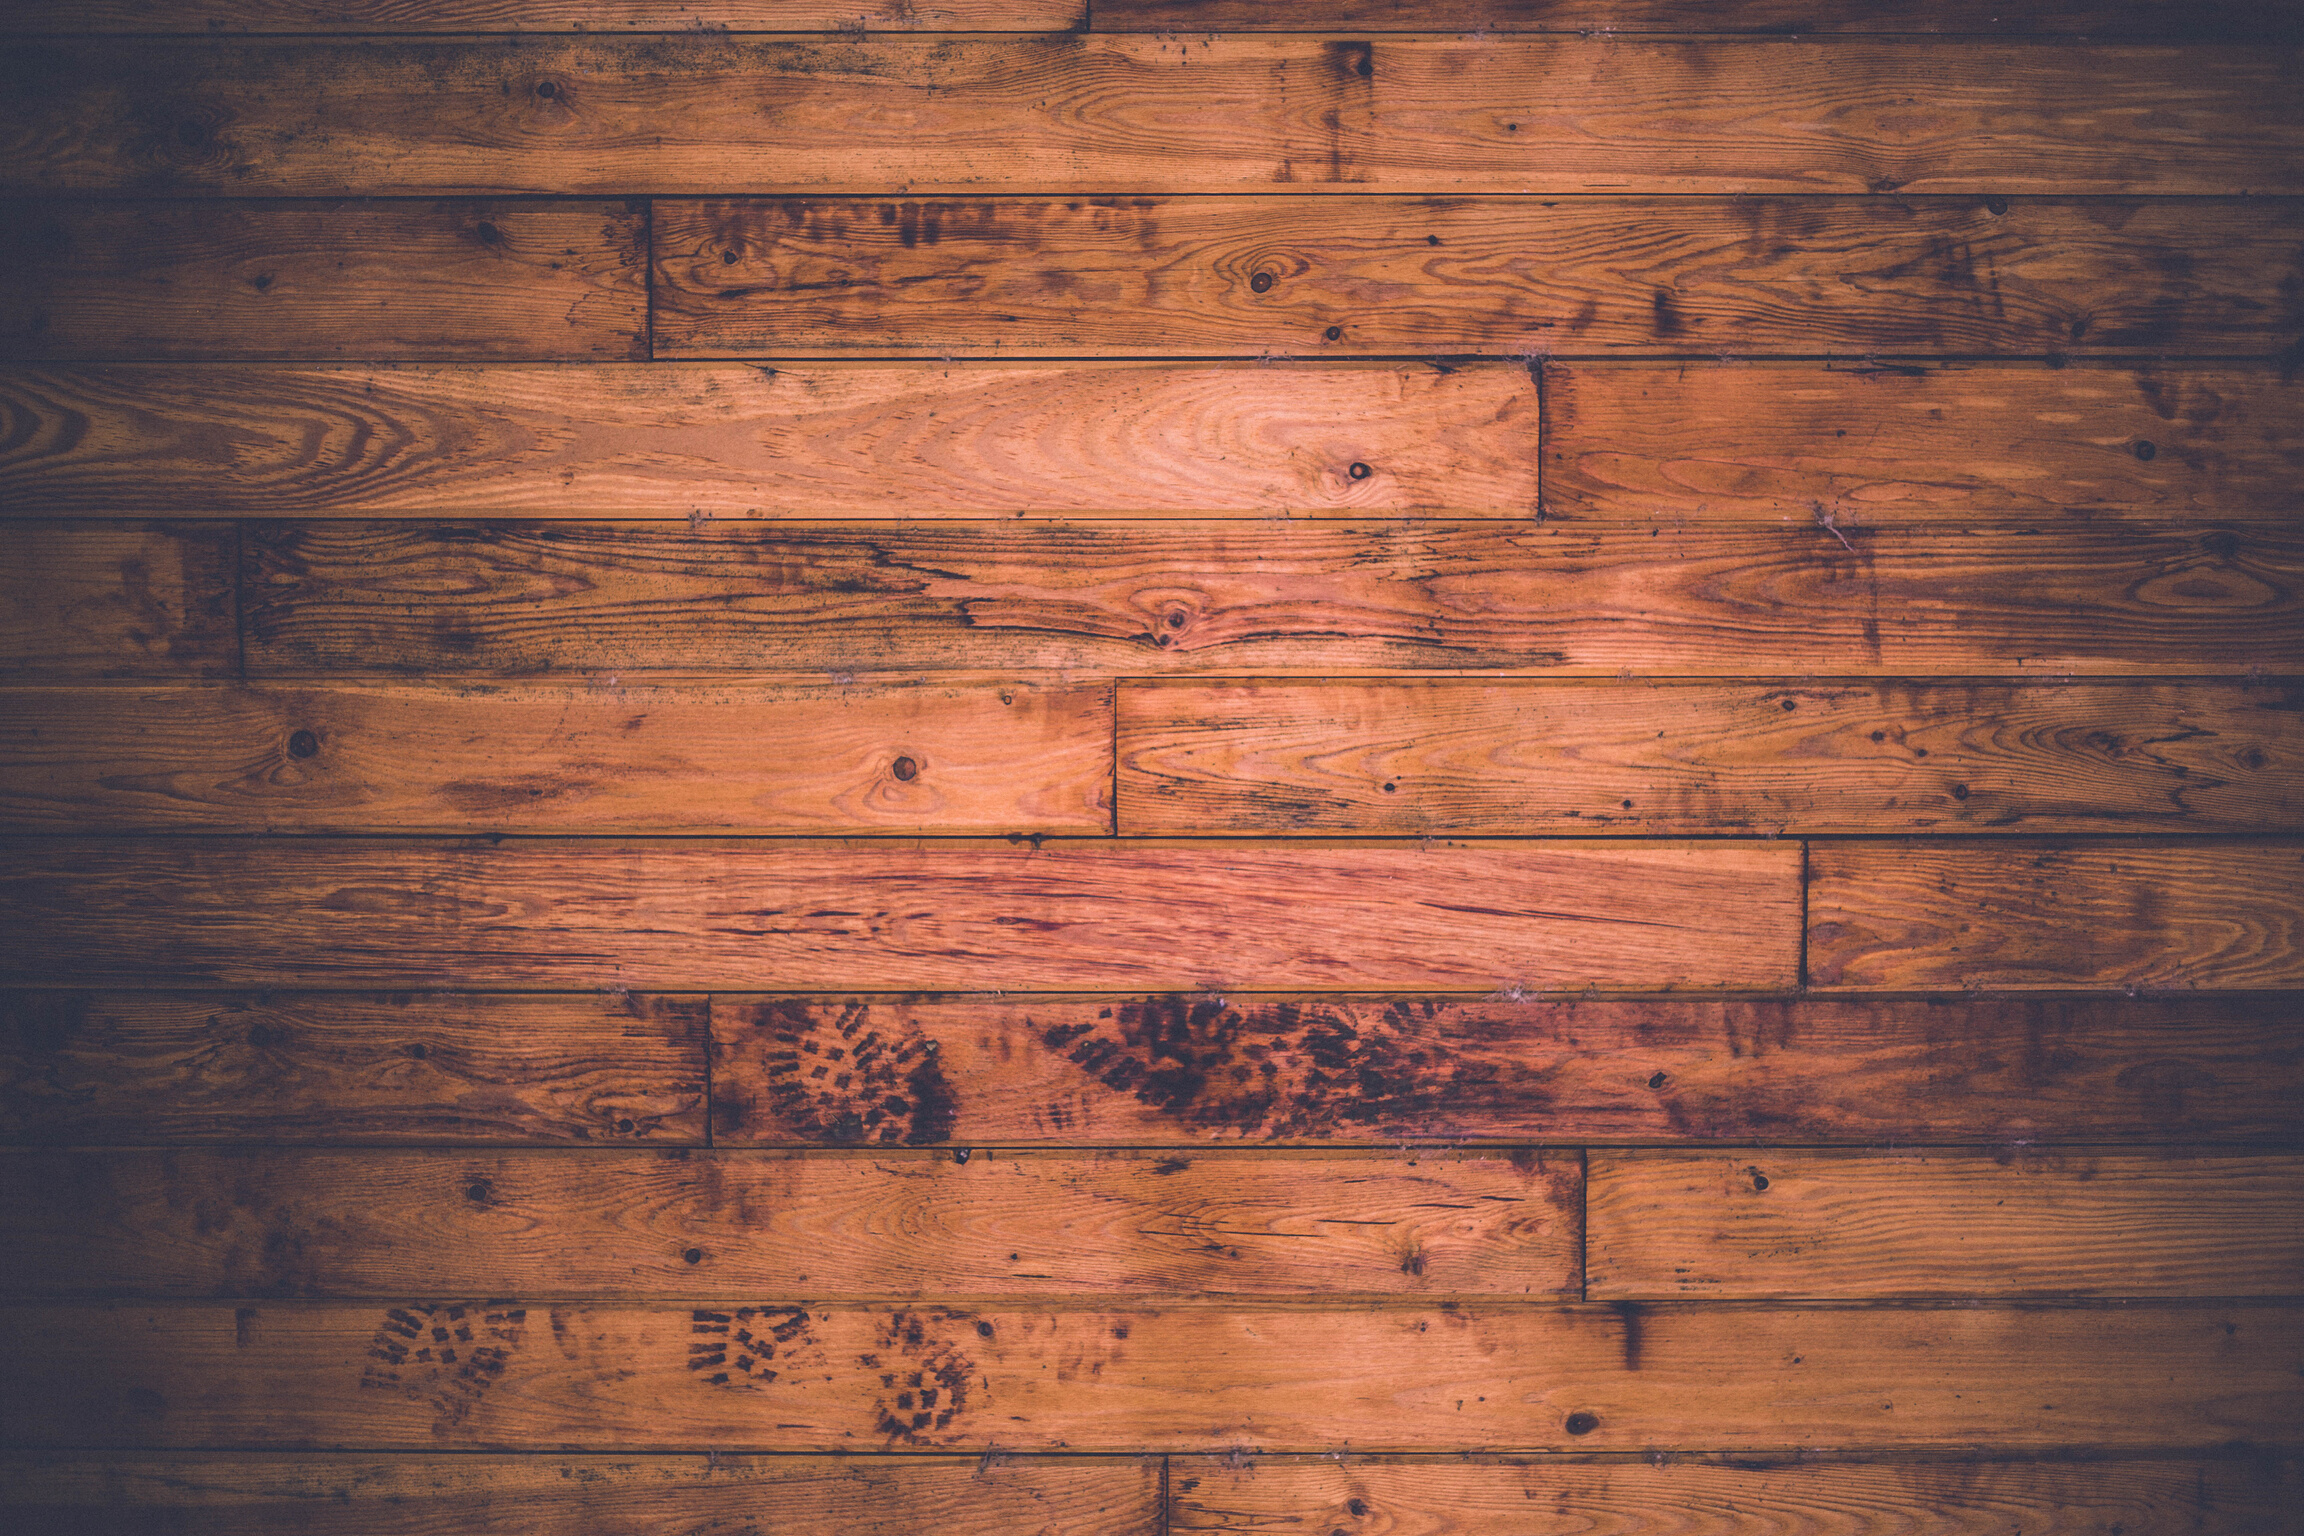 Full frame of hardwood floor